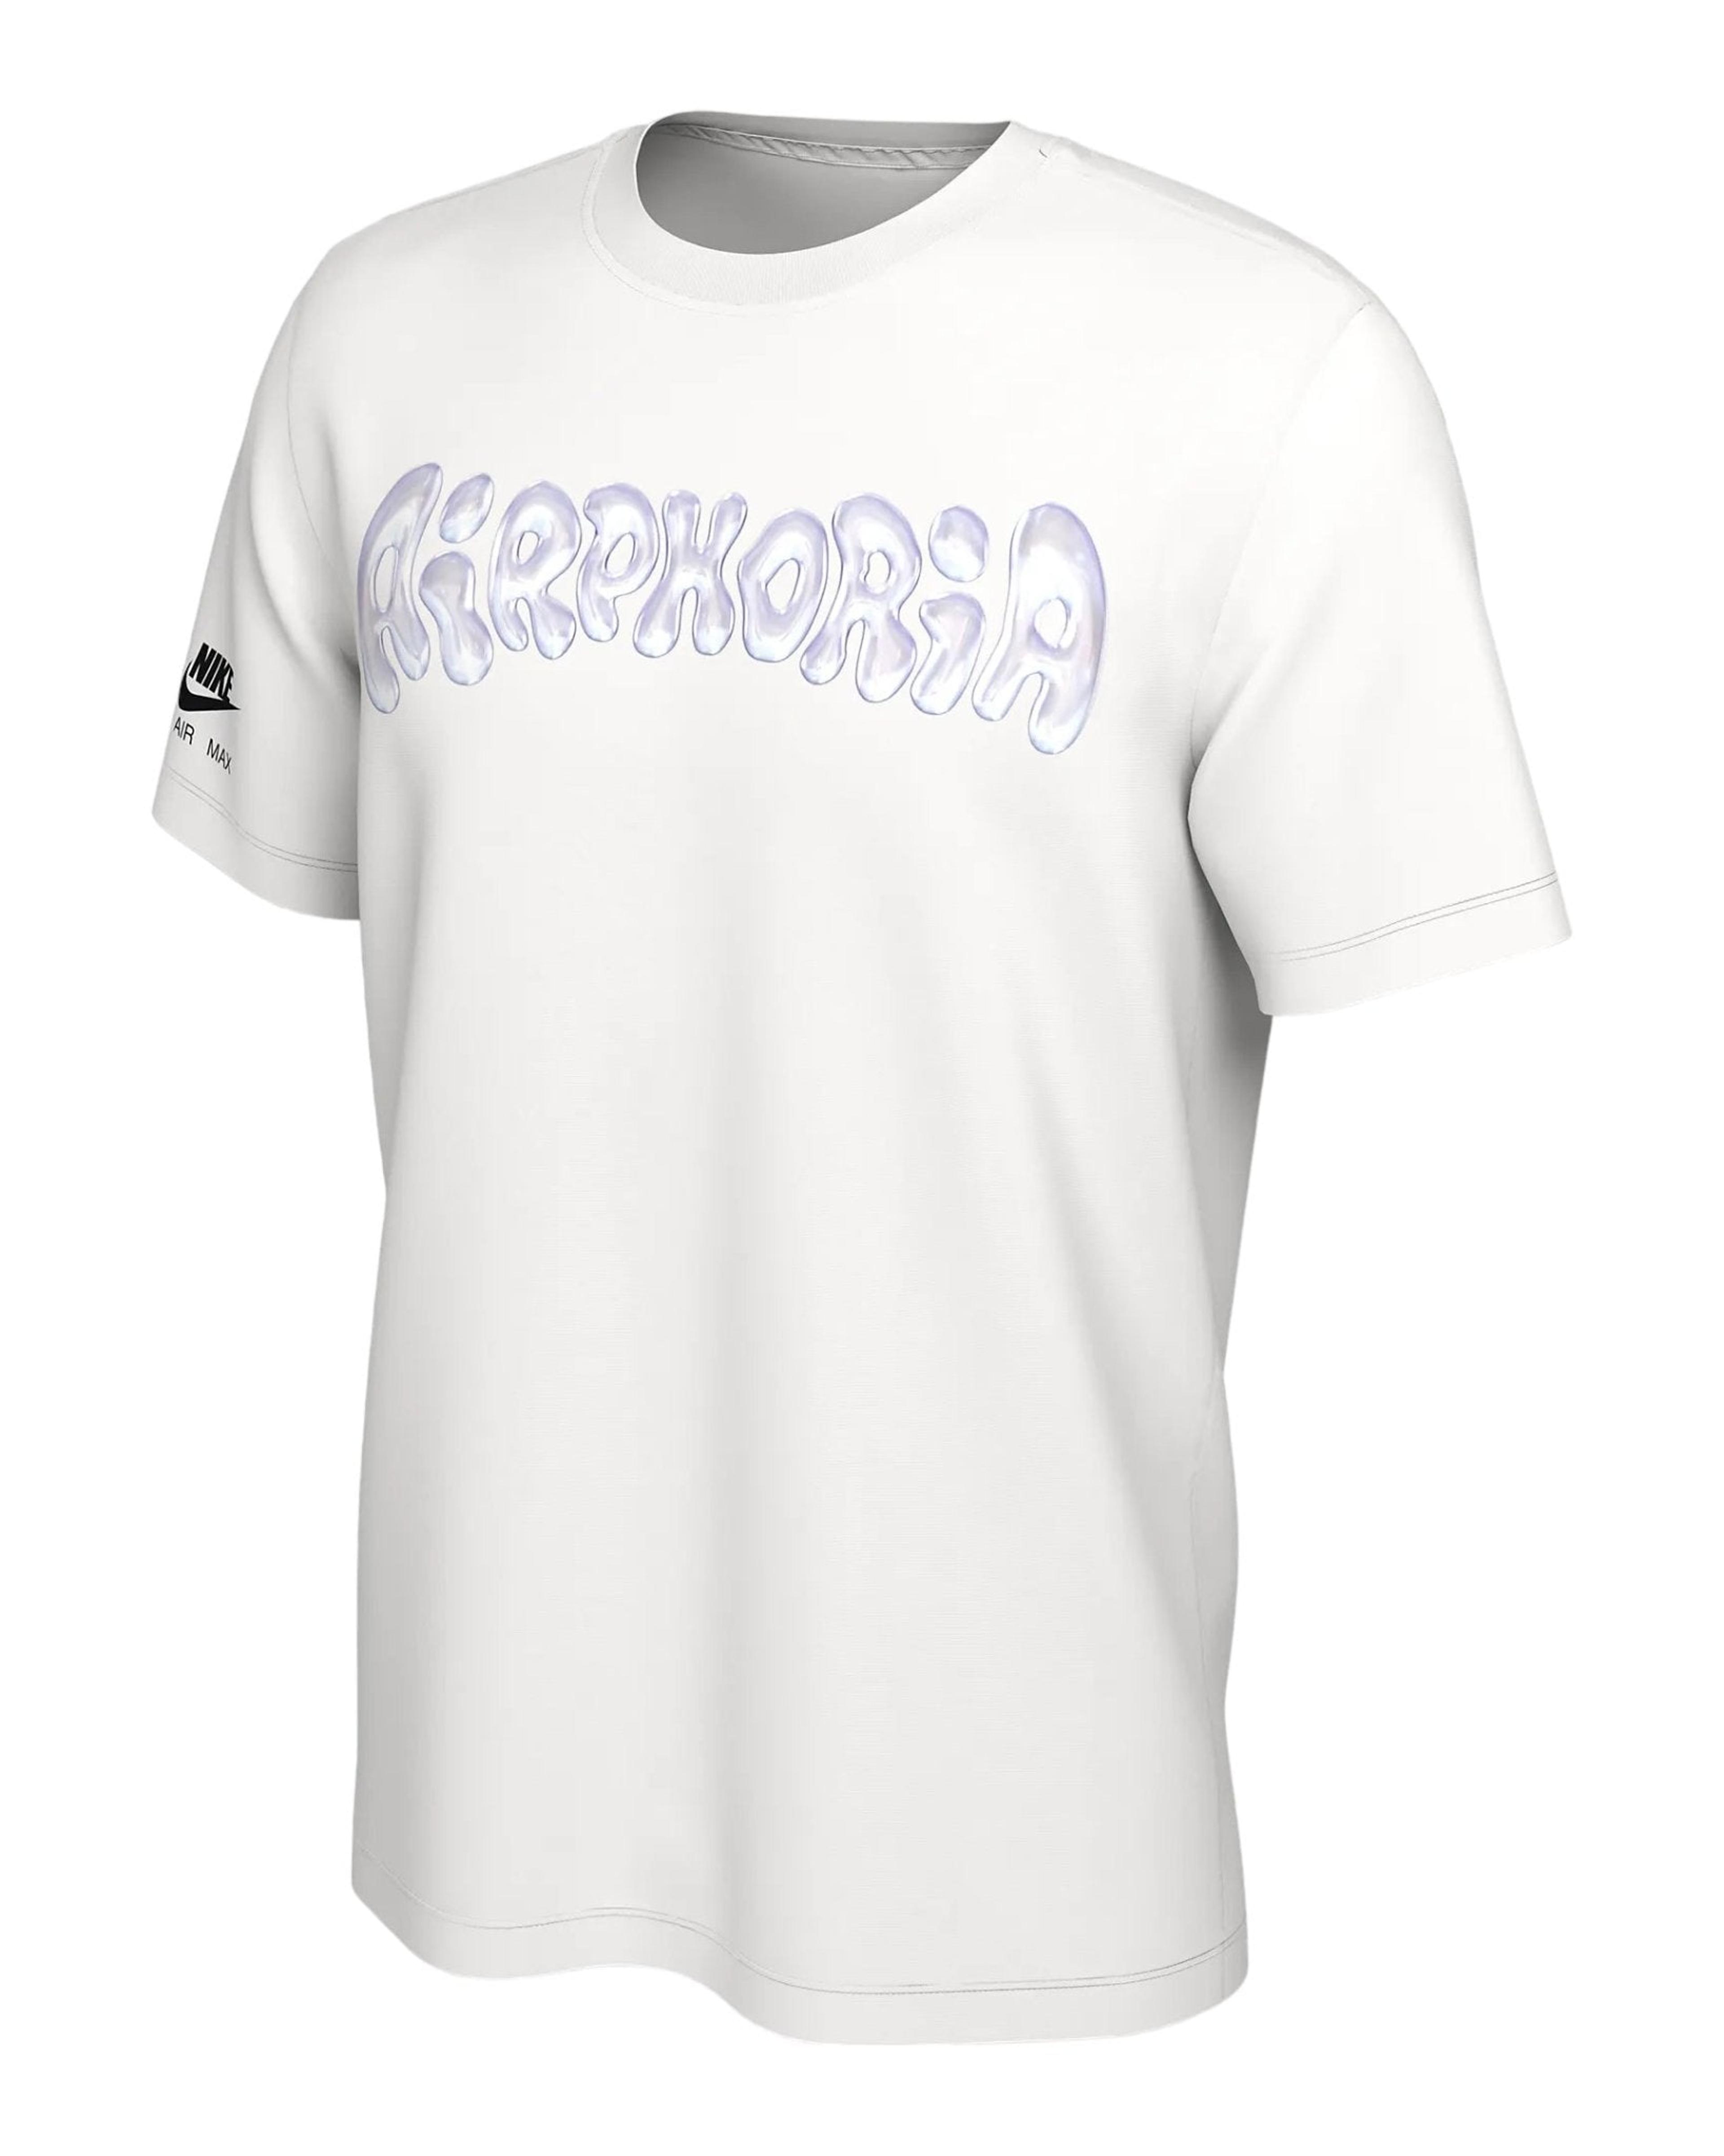 Fortnite x Nike Air Max Airphoria Men's T-Shirt White